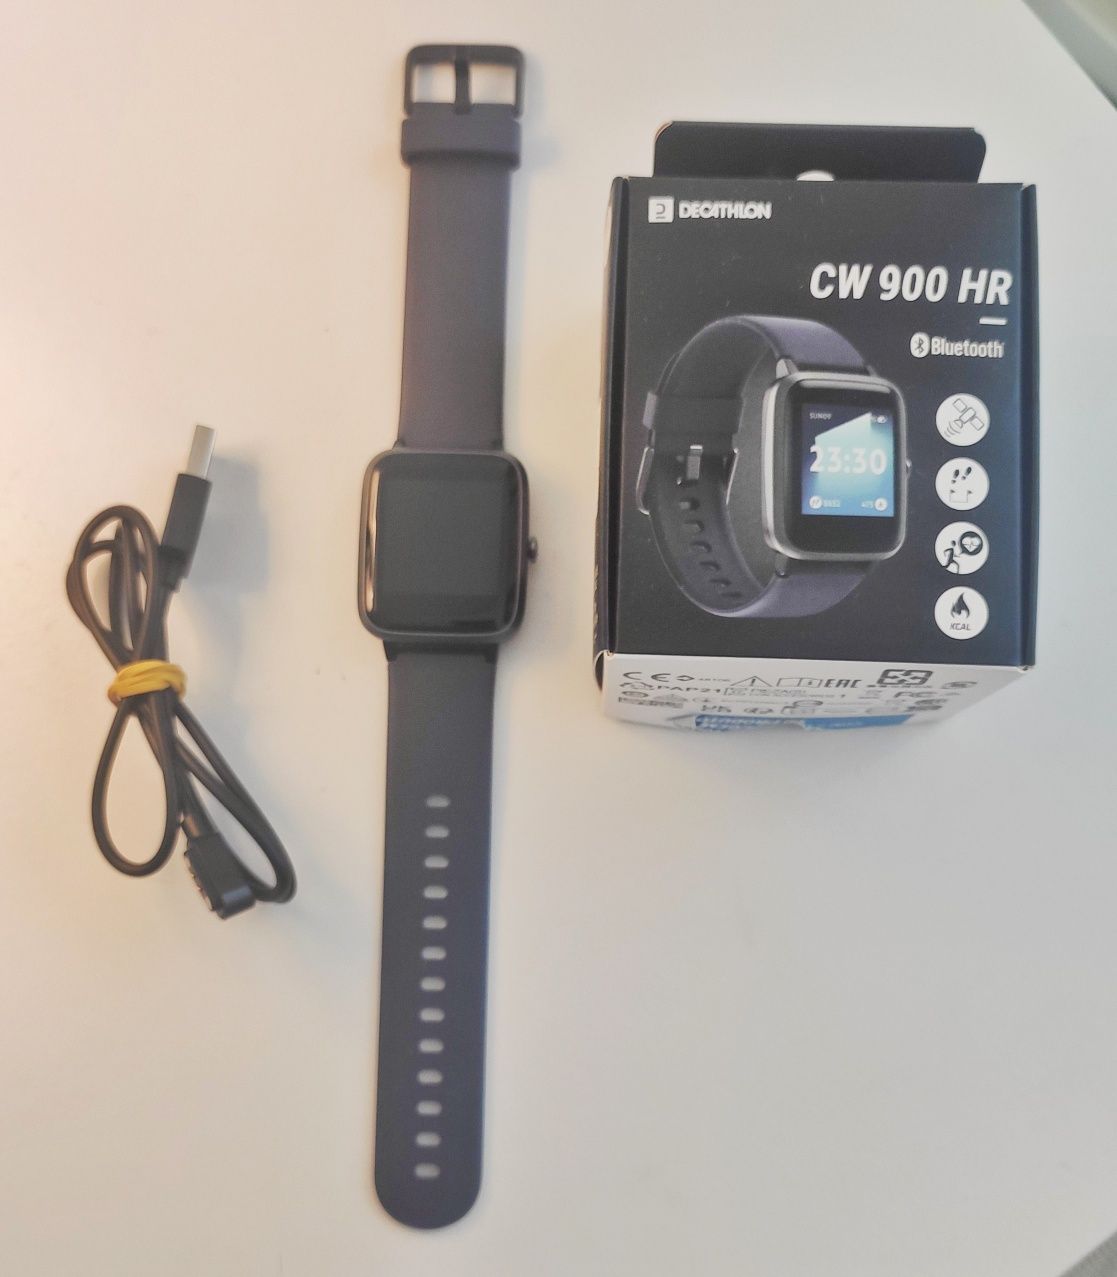 Smartwatch CW 900 HR Decathlon (com garantia)